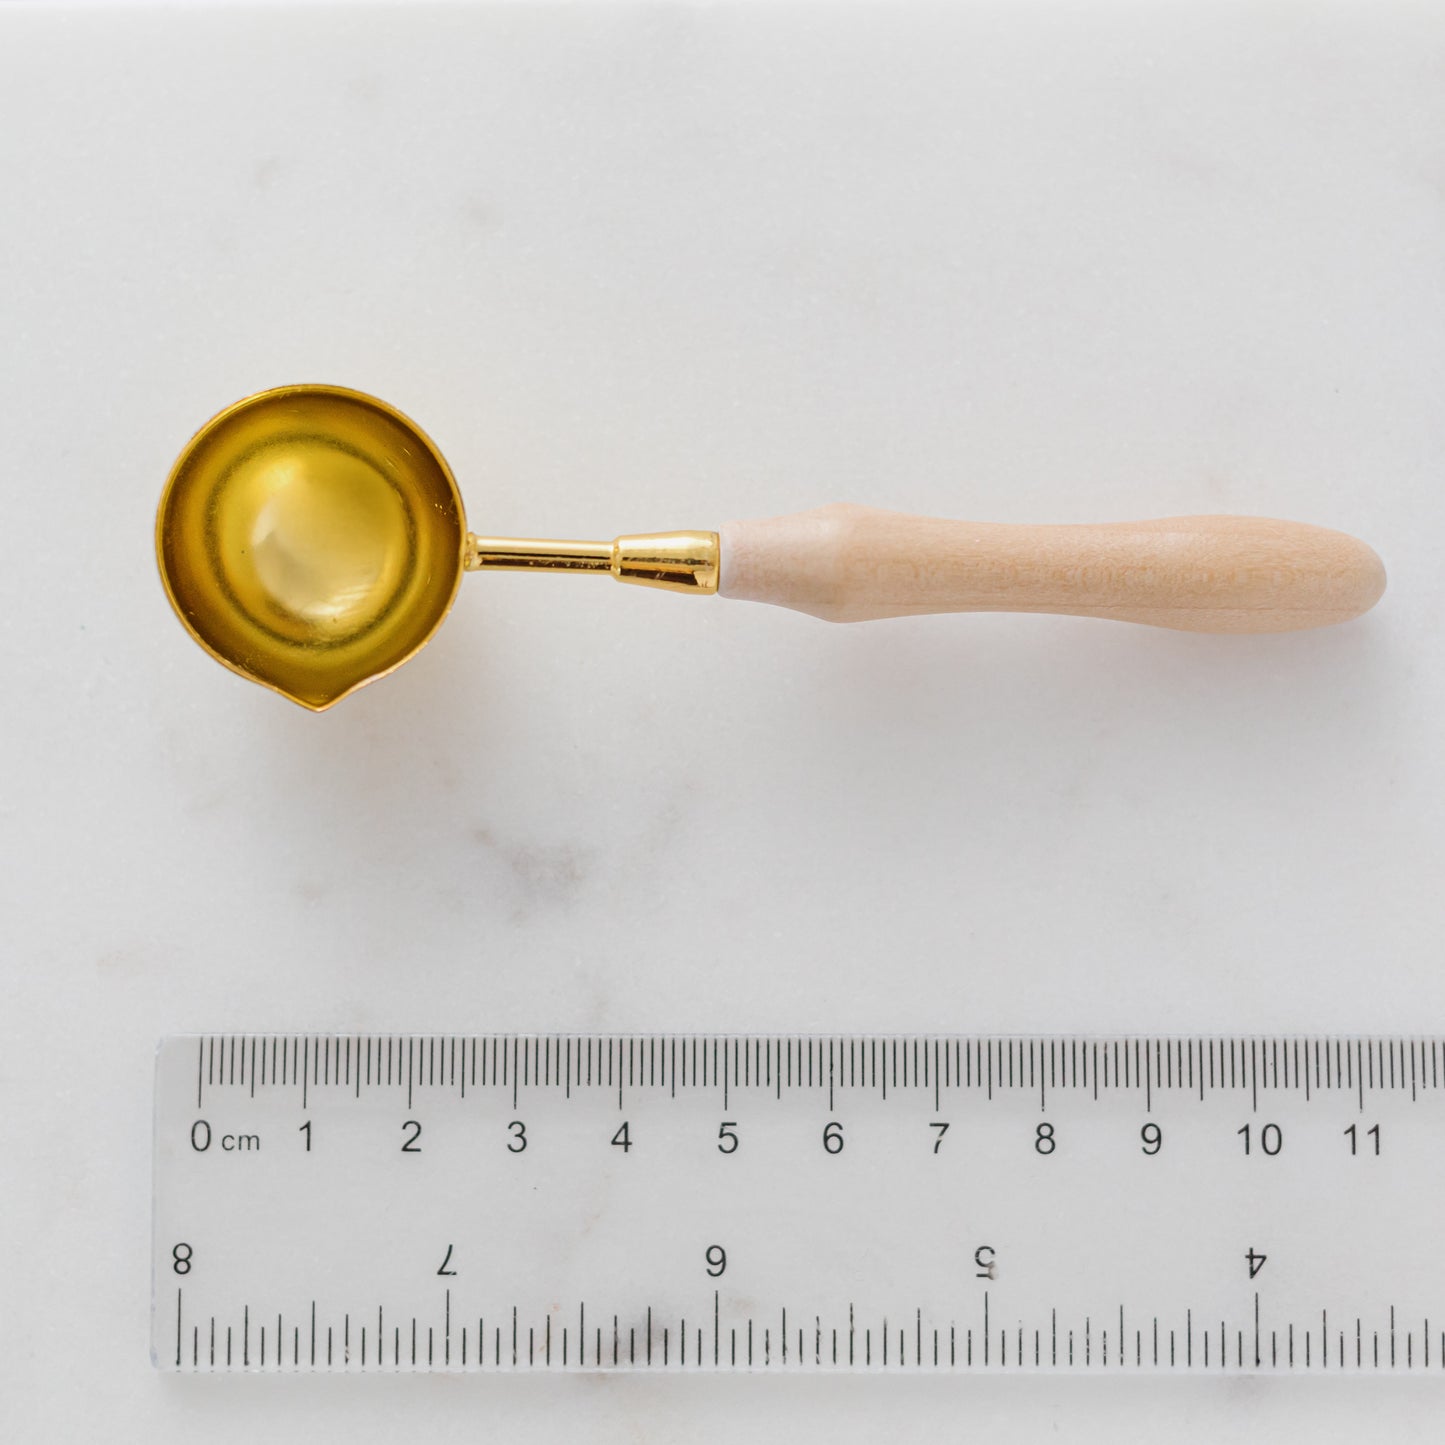 Wooden Wax Seal Spoon